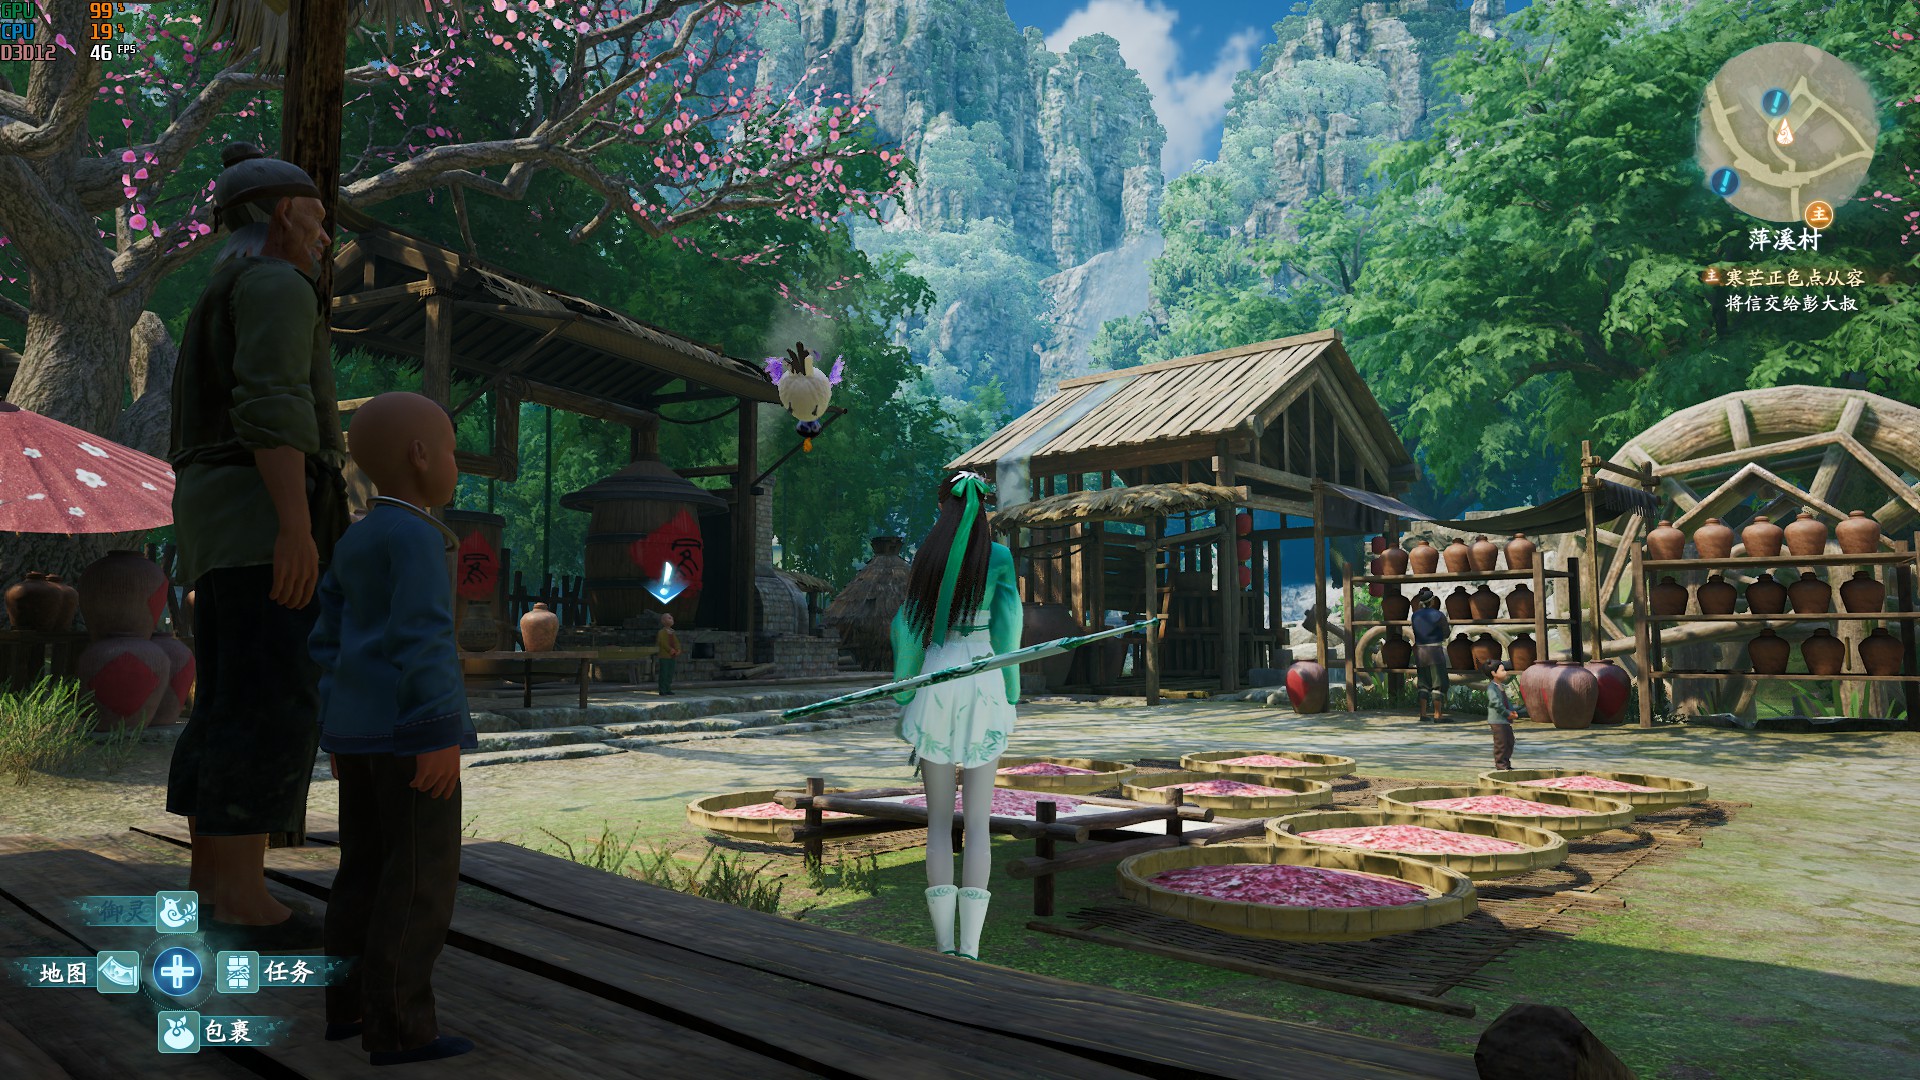 《仙剑奇侠传7》画面各项设置视觉效果对比 - 第19张